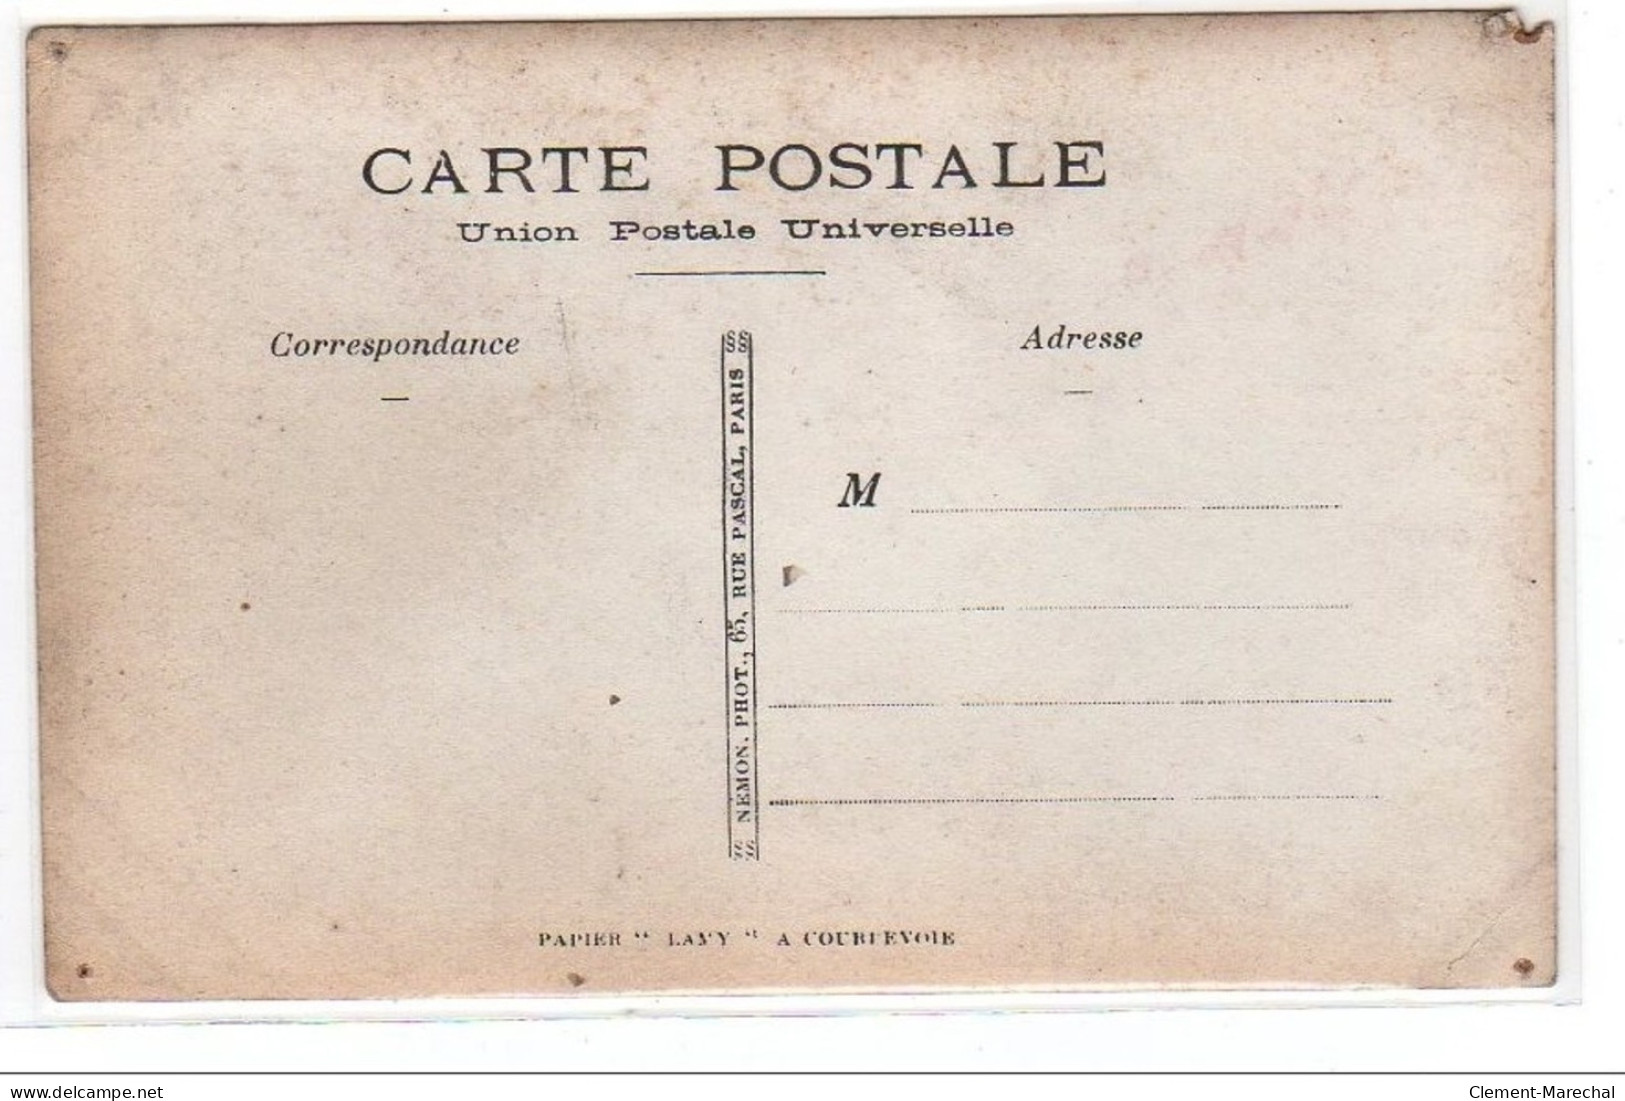 PARIS : Carte Photo D&acute;une Salle De Classe De La Sorbonne Vers 1910 (sciences) - état (défauts) - Distretto: 05